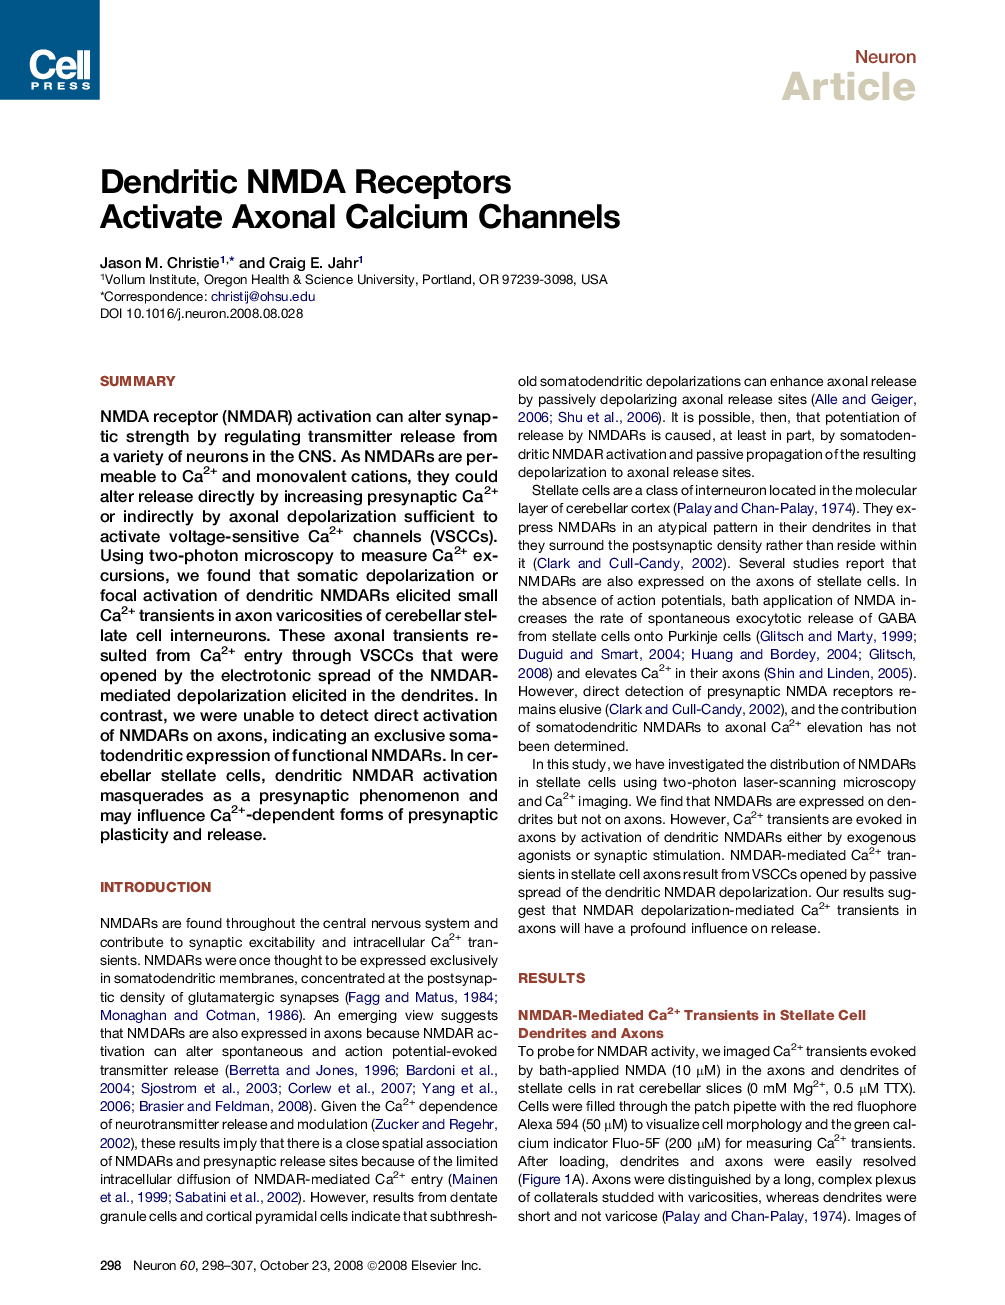 Dendritic NMDA Receptors Activate Axonal Calcium Channels